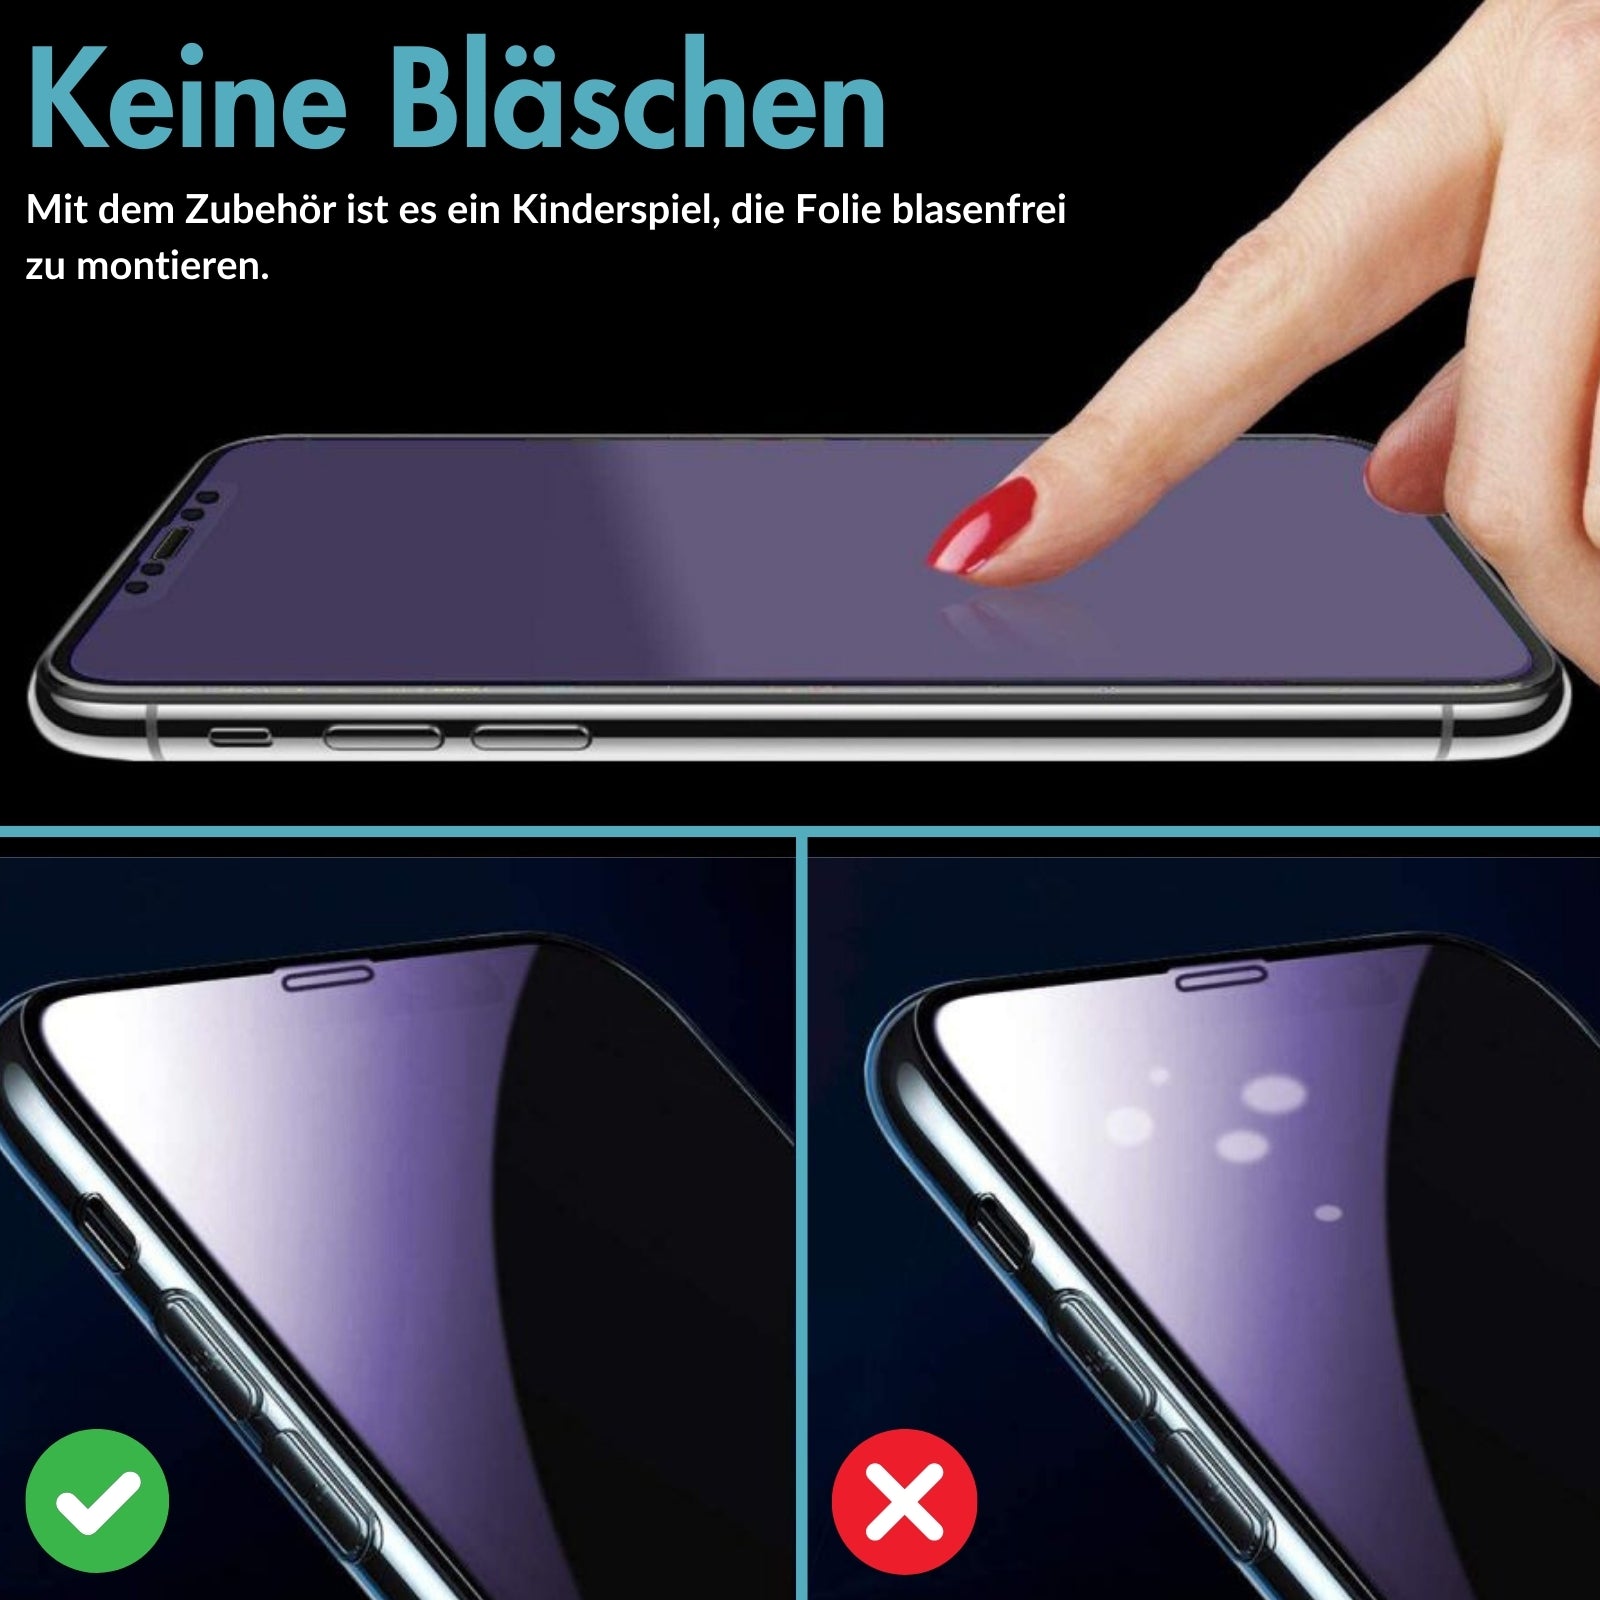 MonkeyTEC Lot de 3 films de protection d'écran en verre trempé pour Apple iPhone H9, anti-traces de doigts